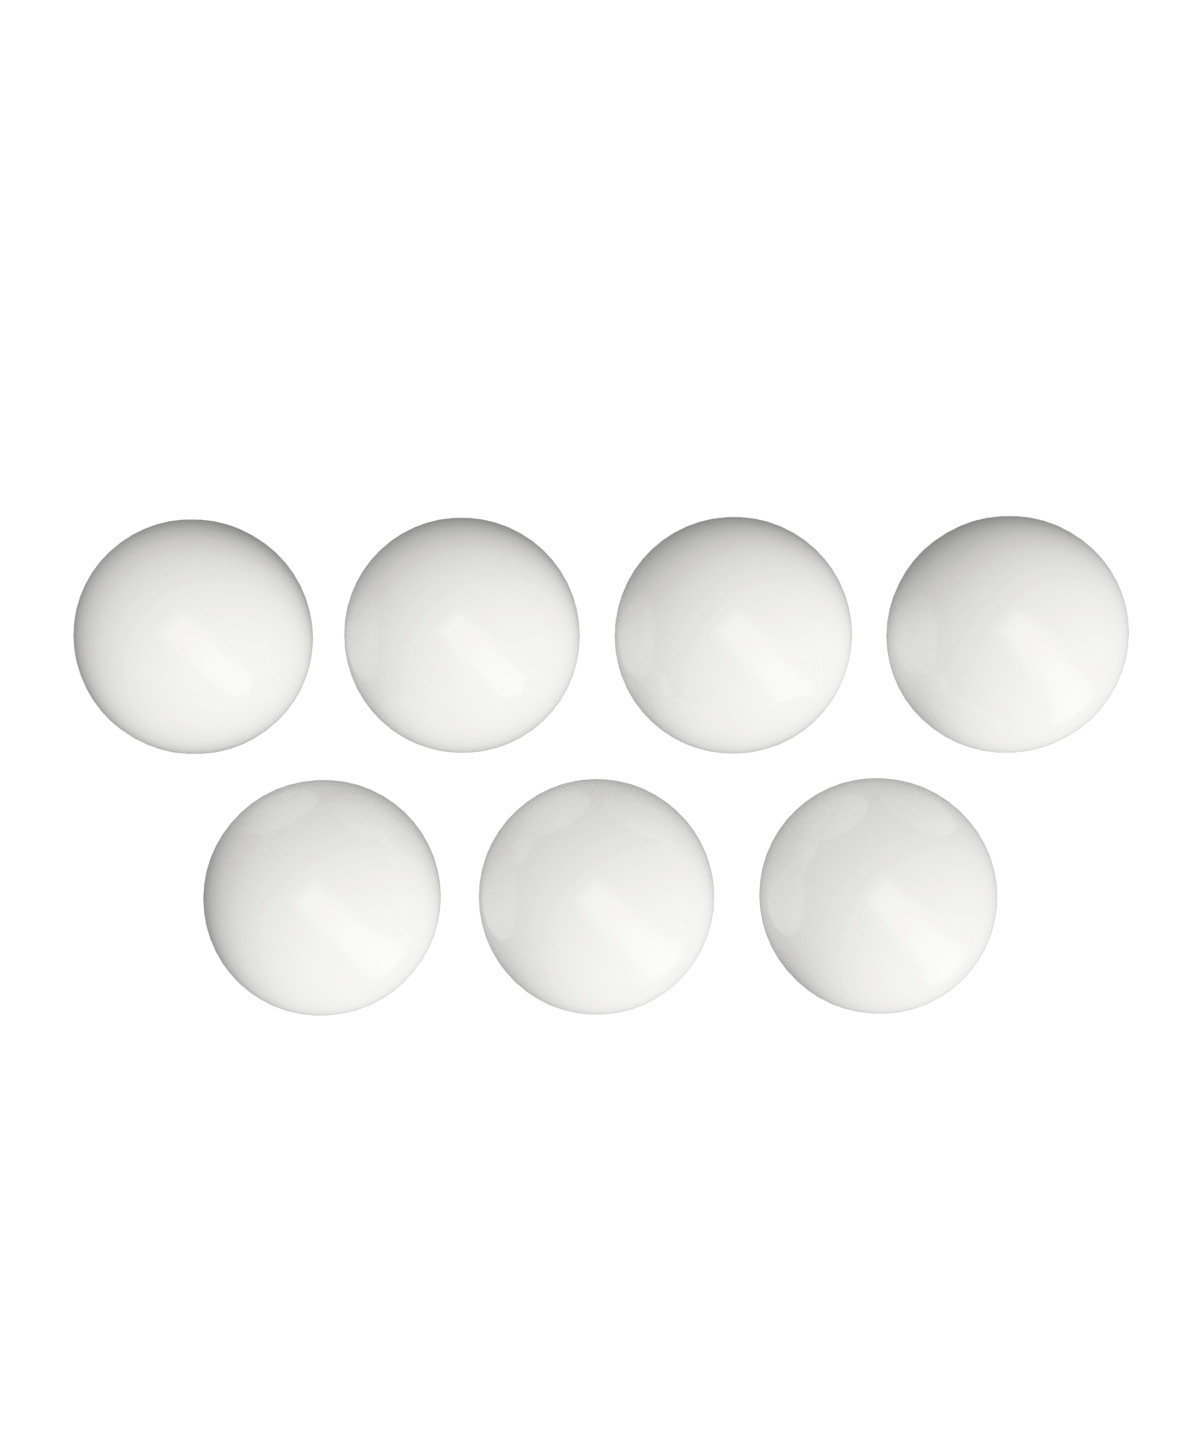 Moze Dash - Replacement Balls (7 Pcs)